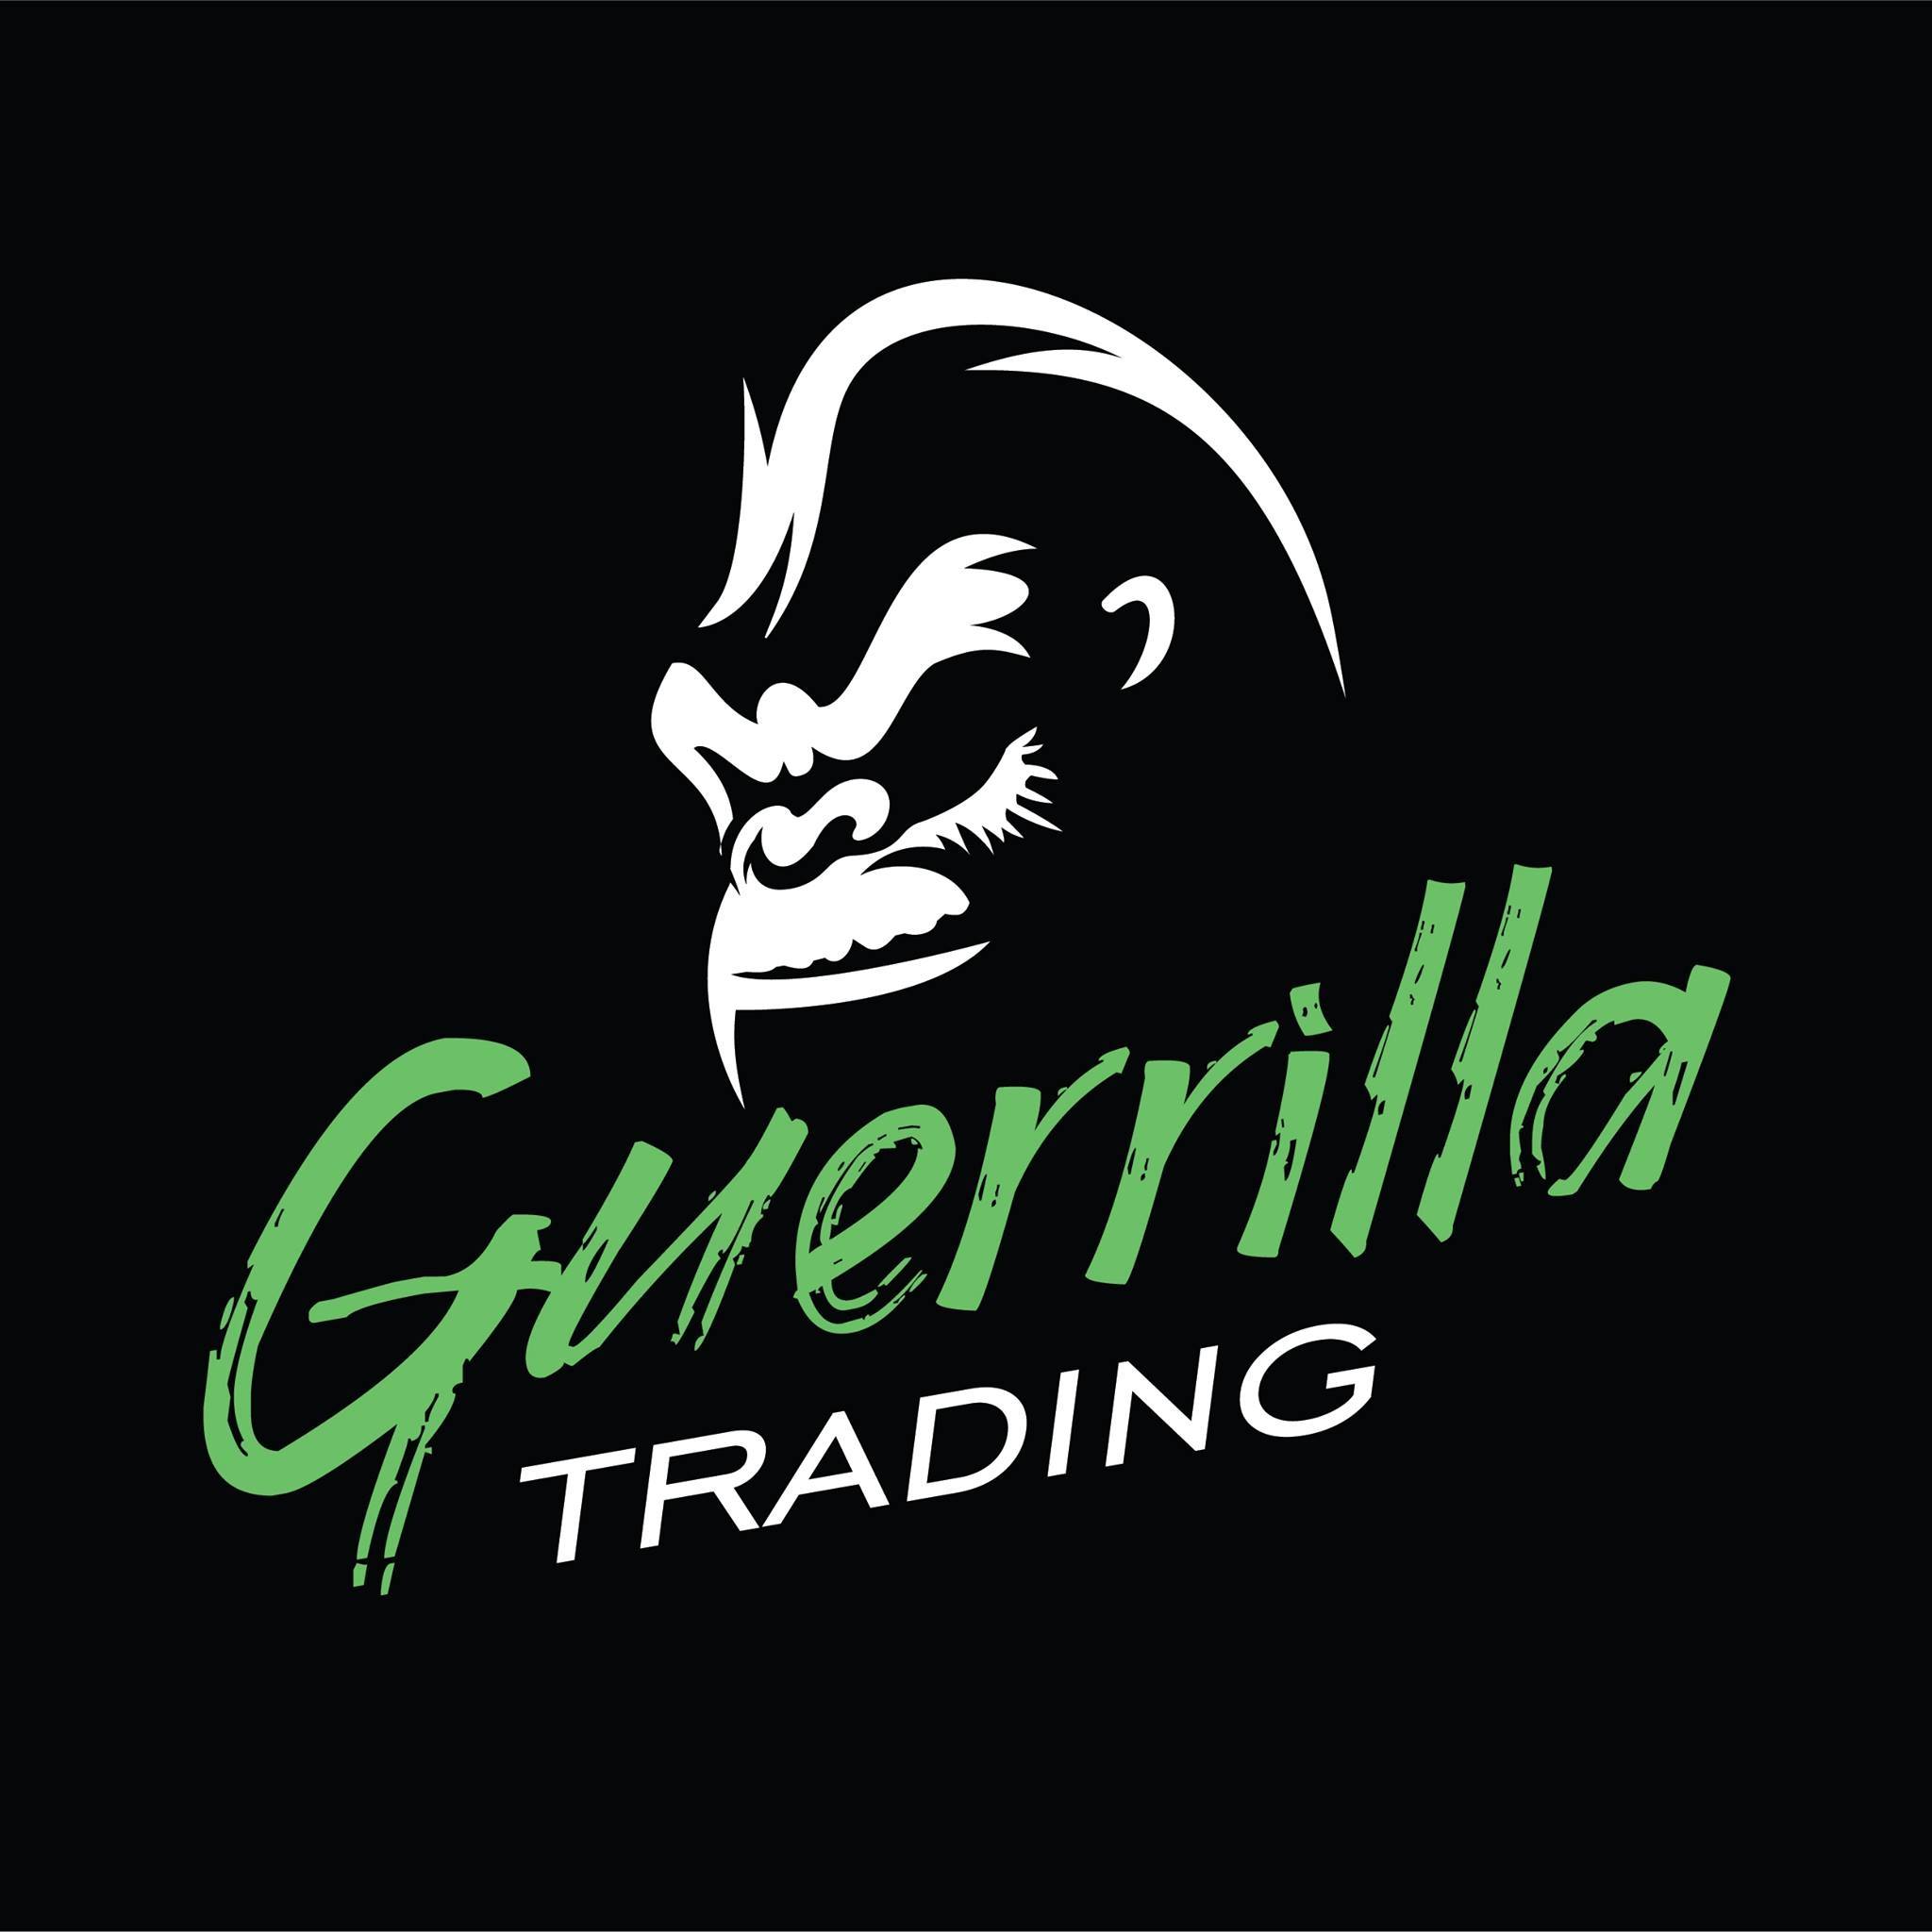 Guerrilla Trading